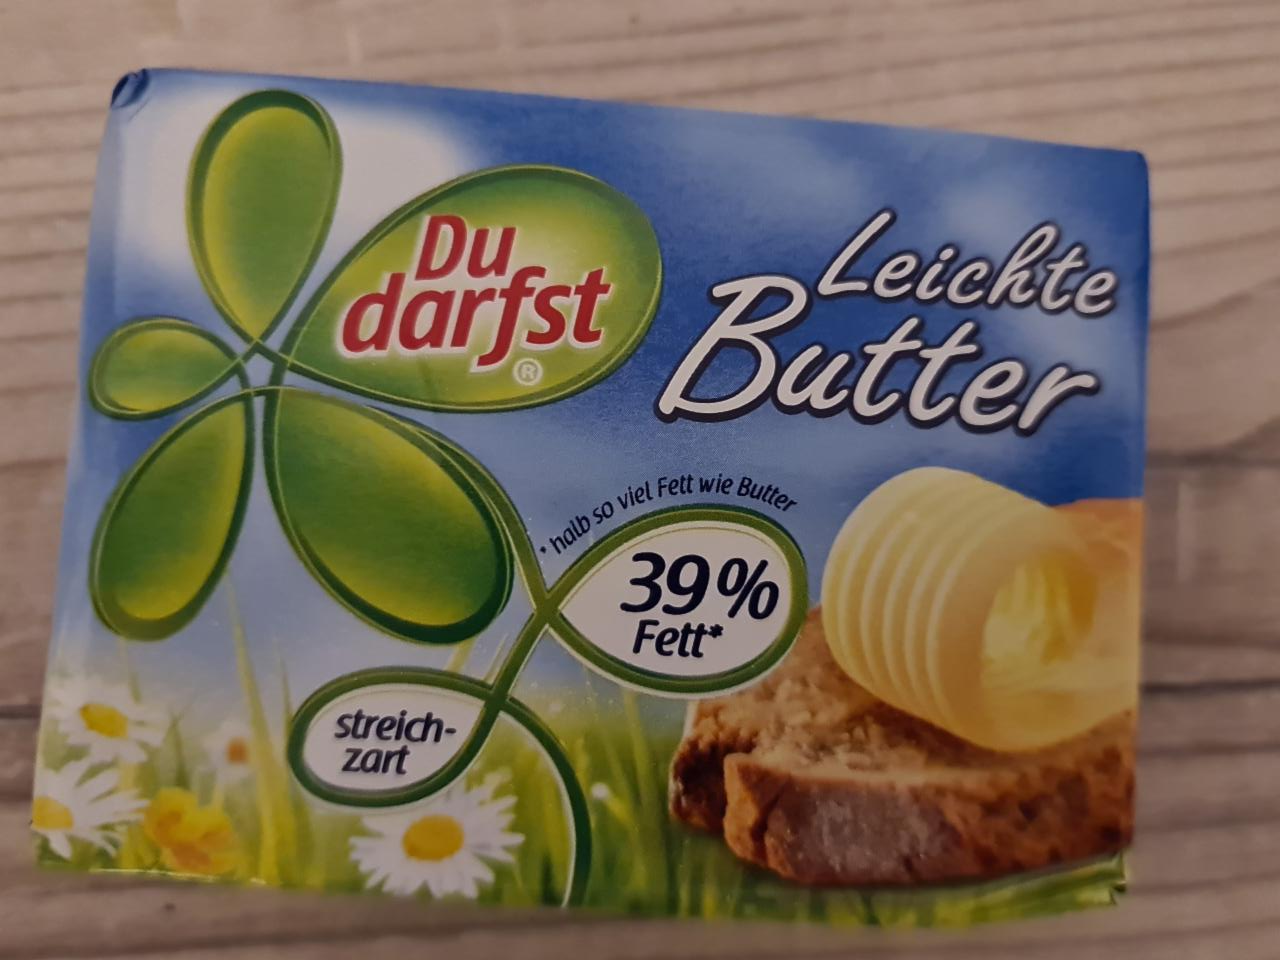 Fotografie - Leichte Butter 39% fett Du darfst